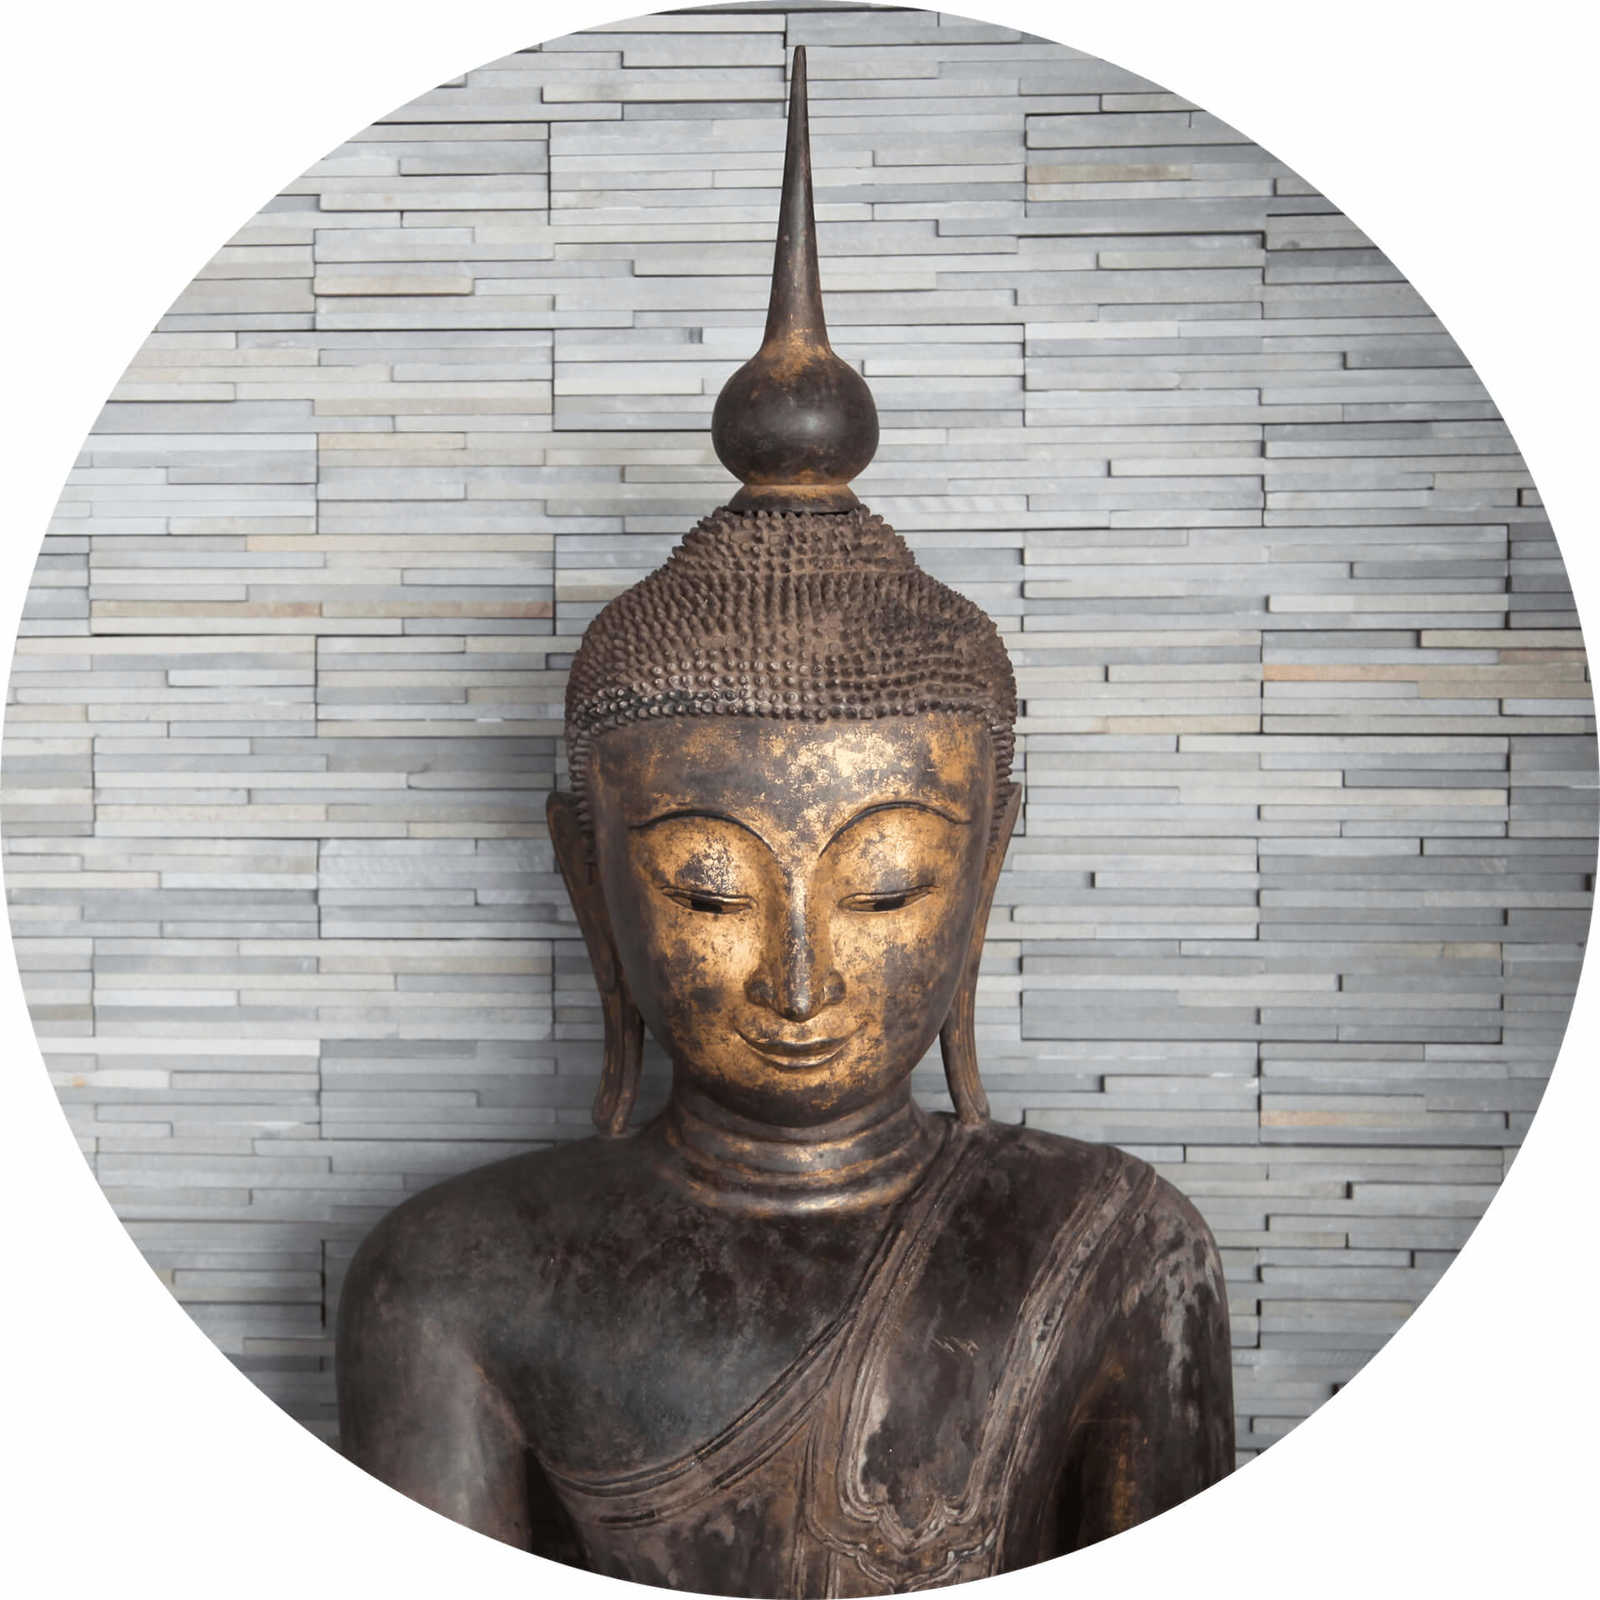         Thai Buddha mural - Brown, Grey
    